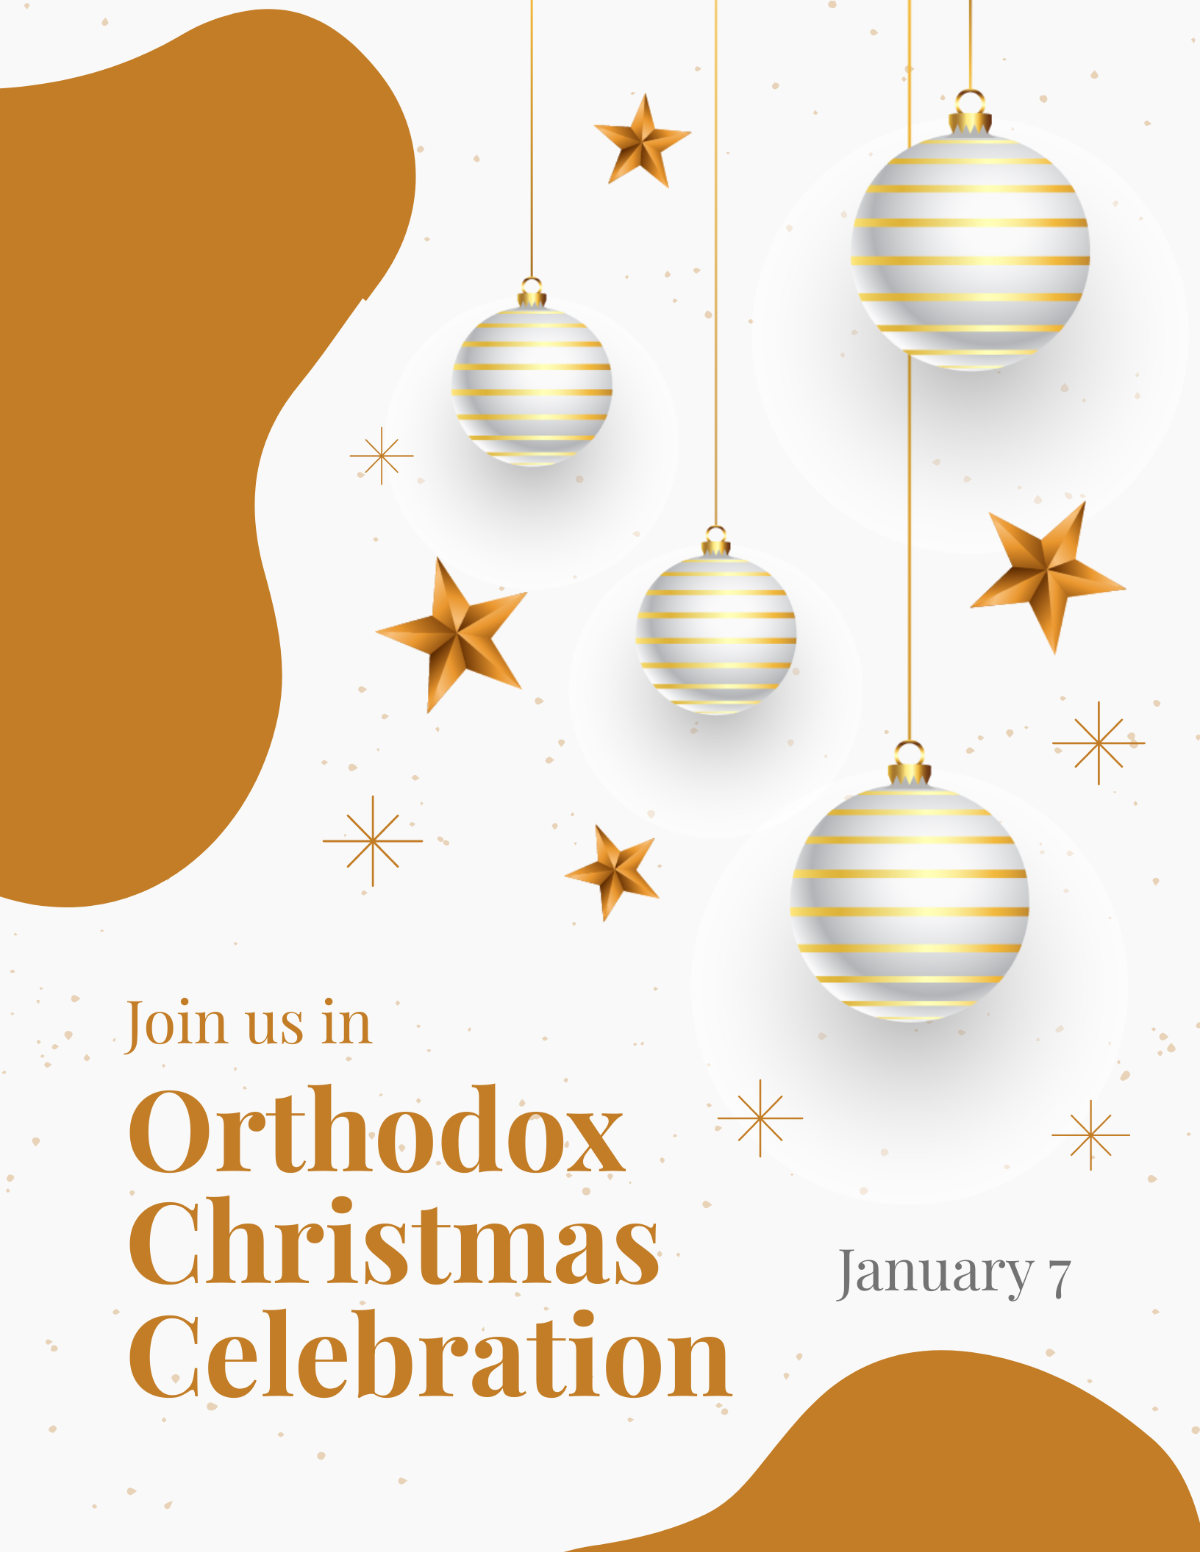 Orthodox Christmas Celebration Flyer